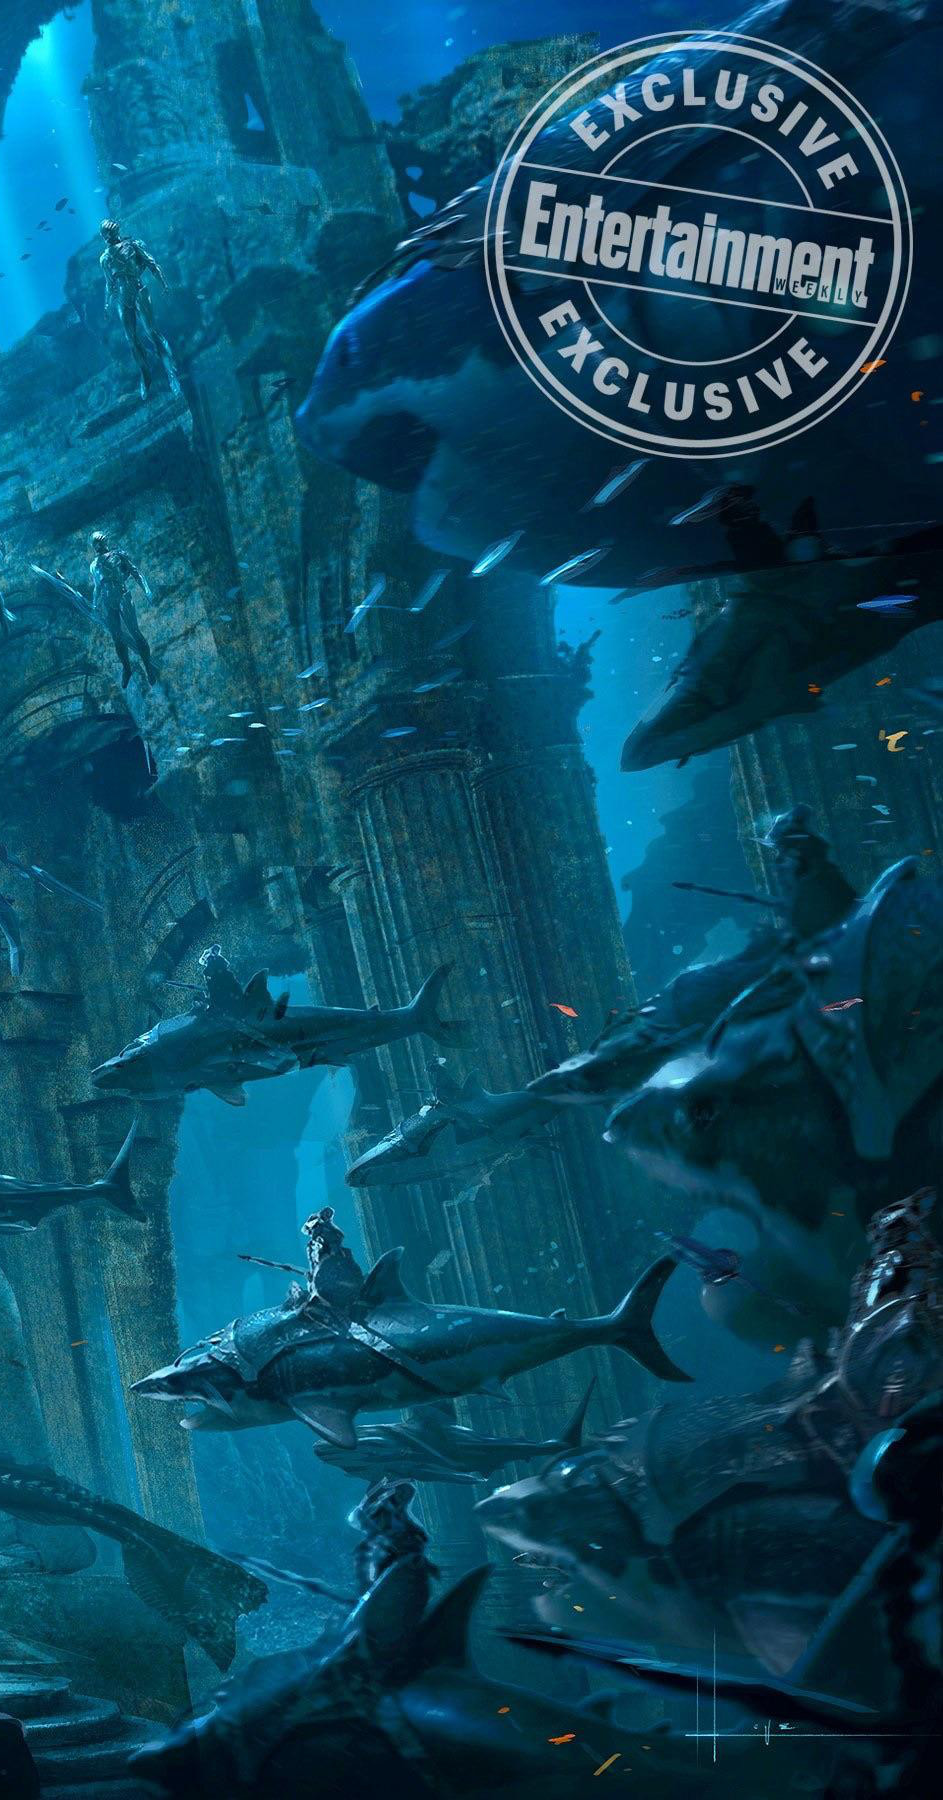 Aquaman Concept Art & Sea Dragons vs Sharks Image  Cosmic 